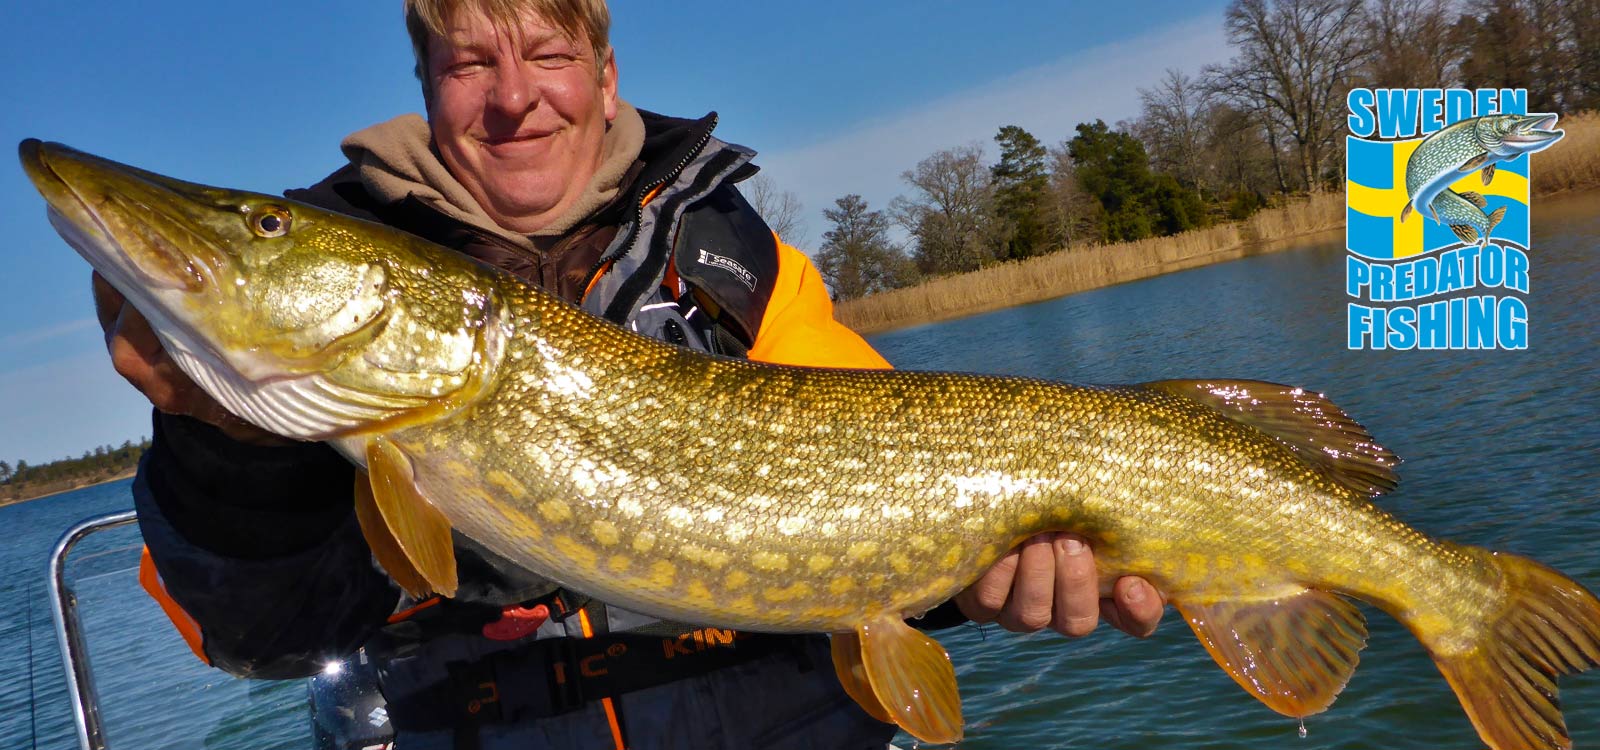 peche suede sweden predator fishing 01